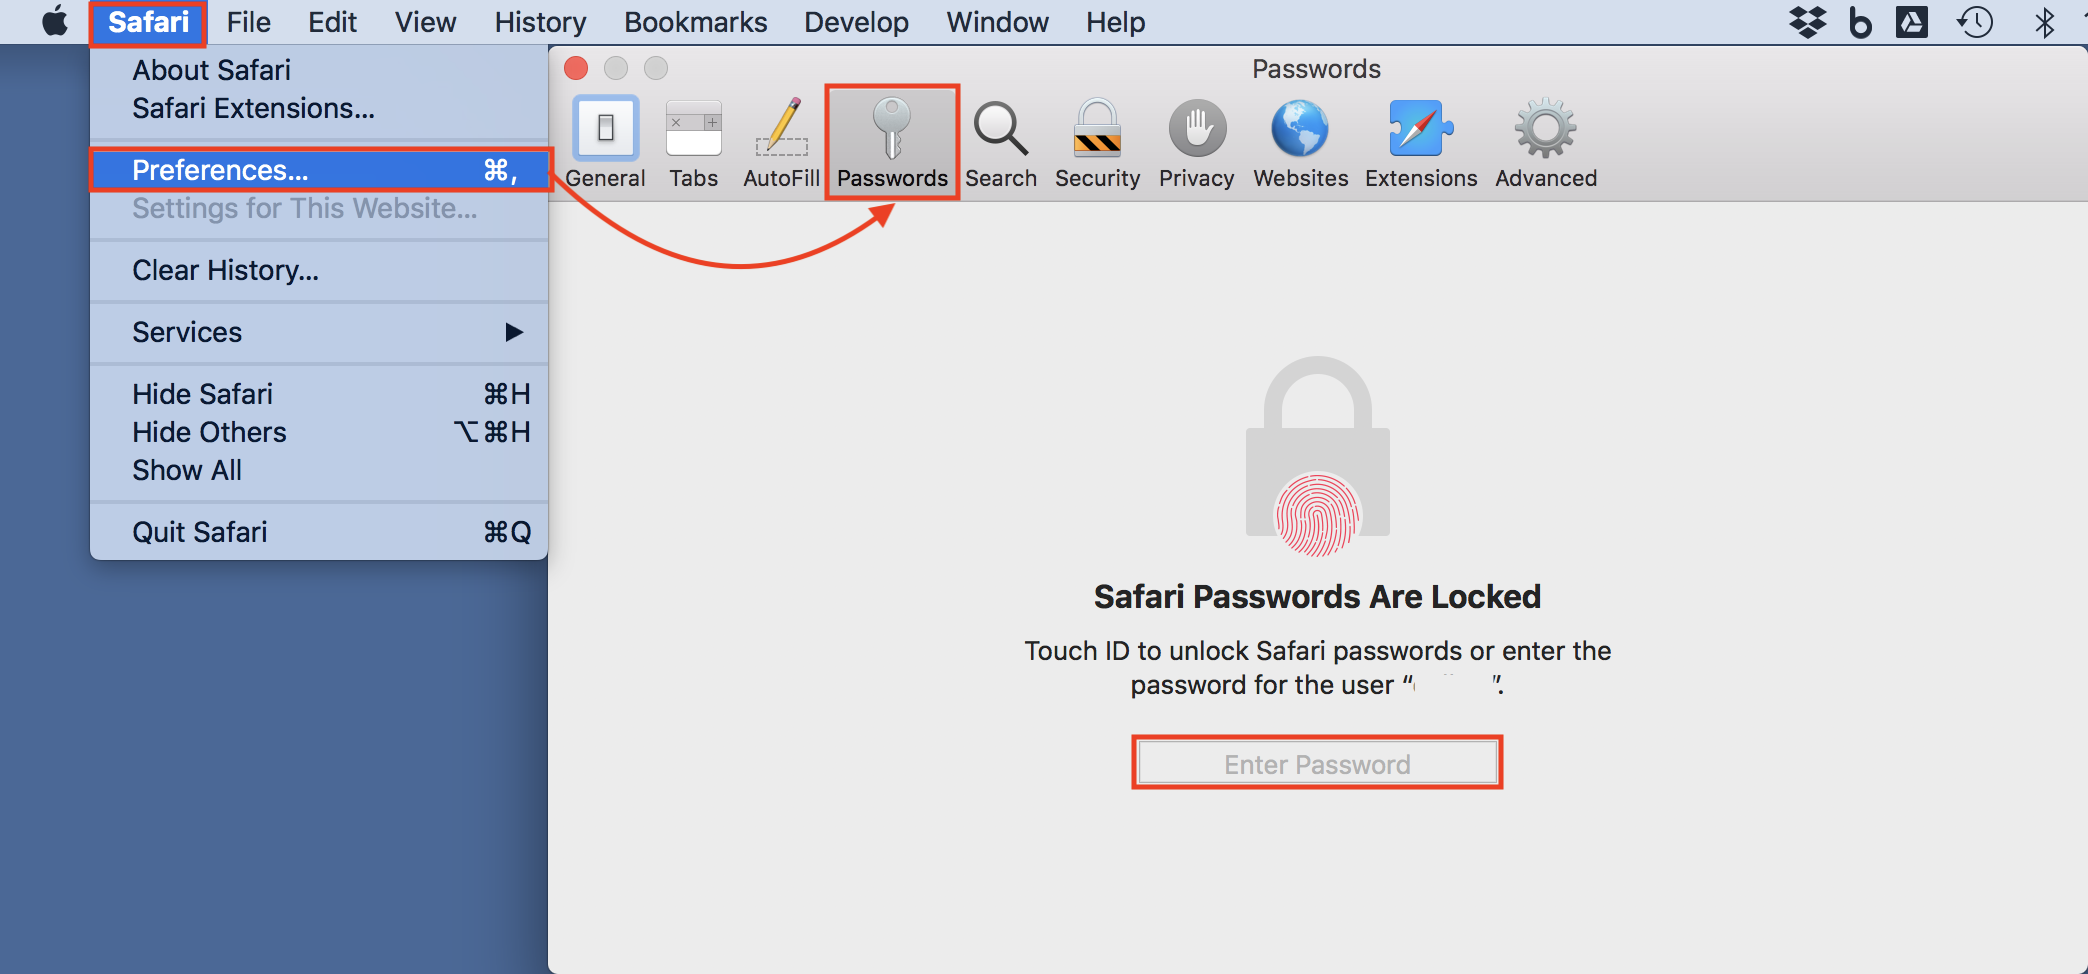 Safari passwords